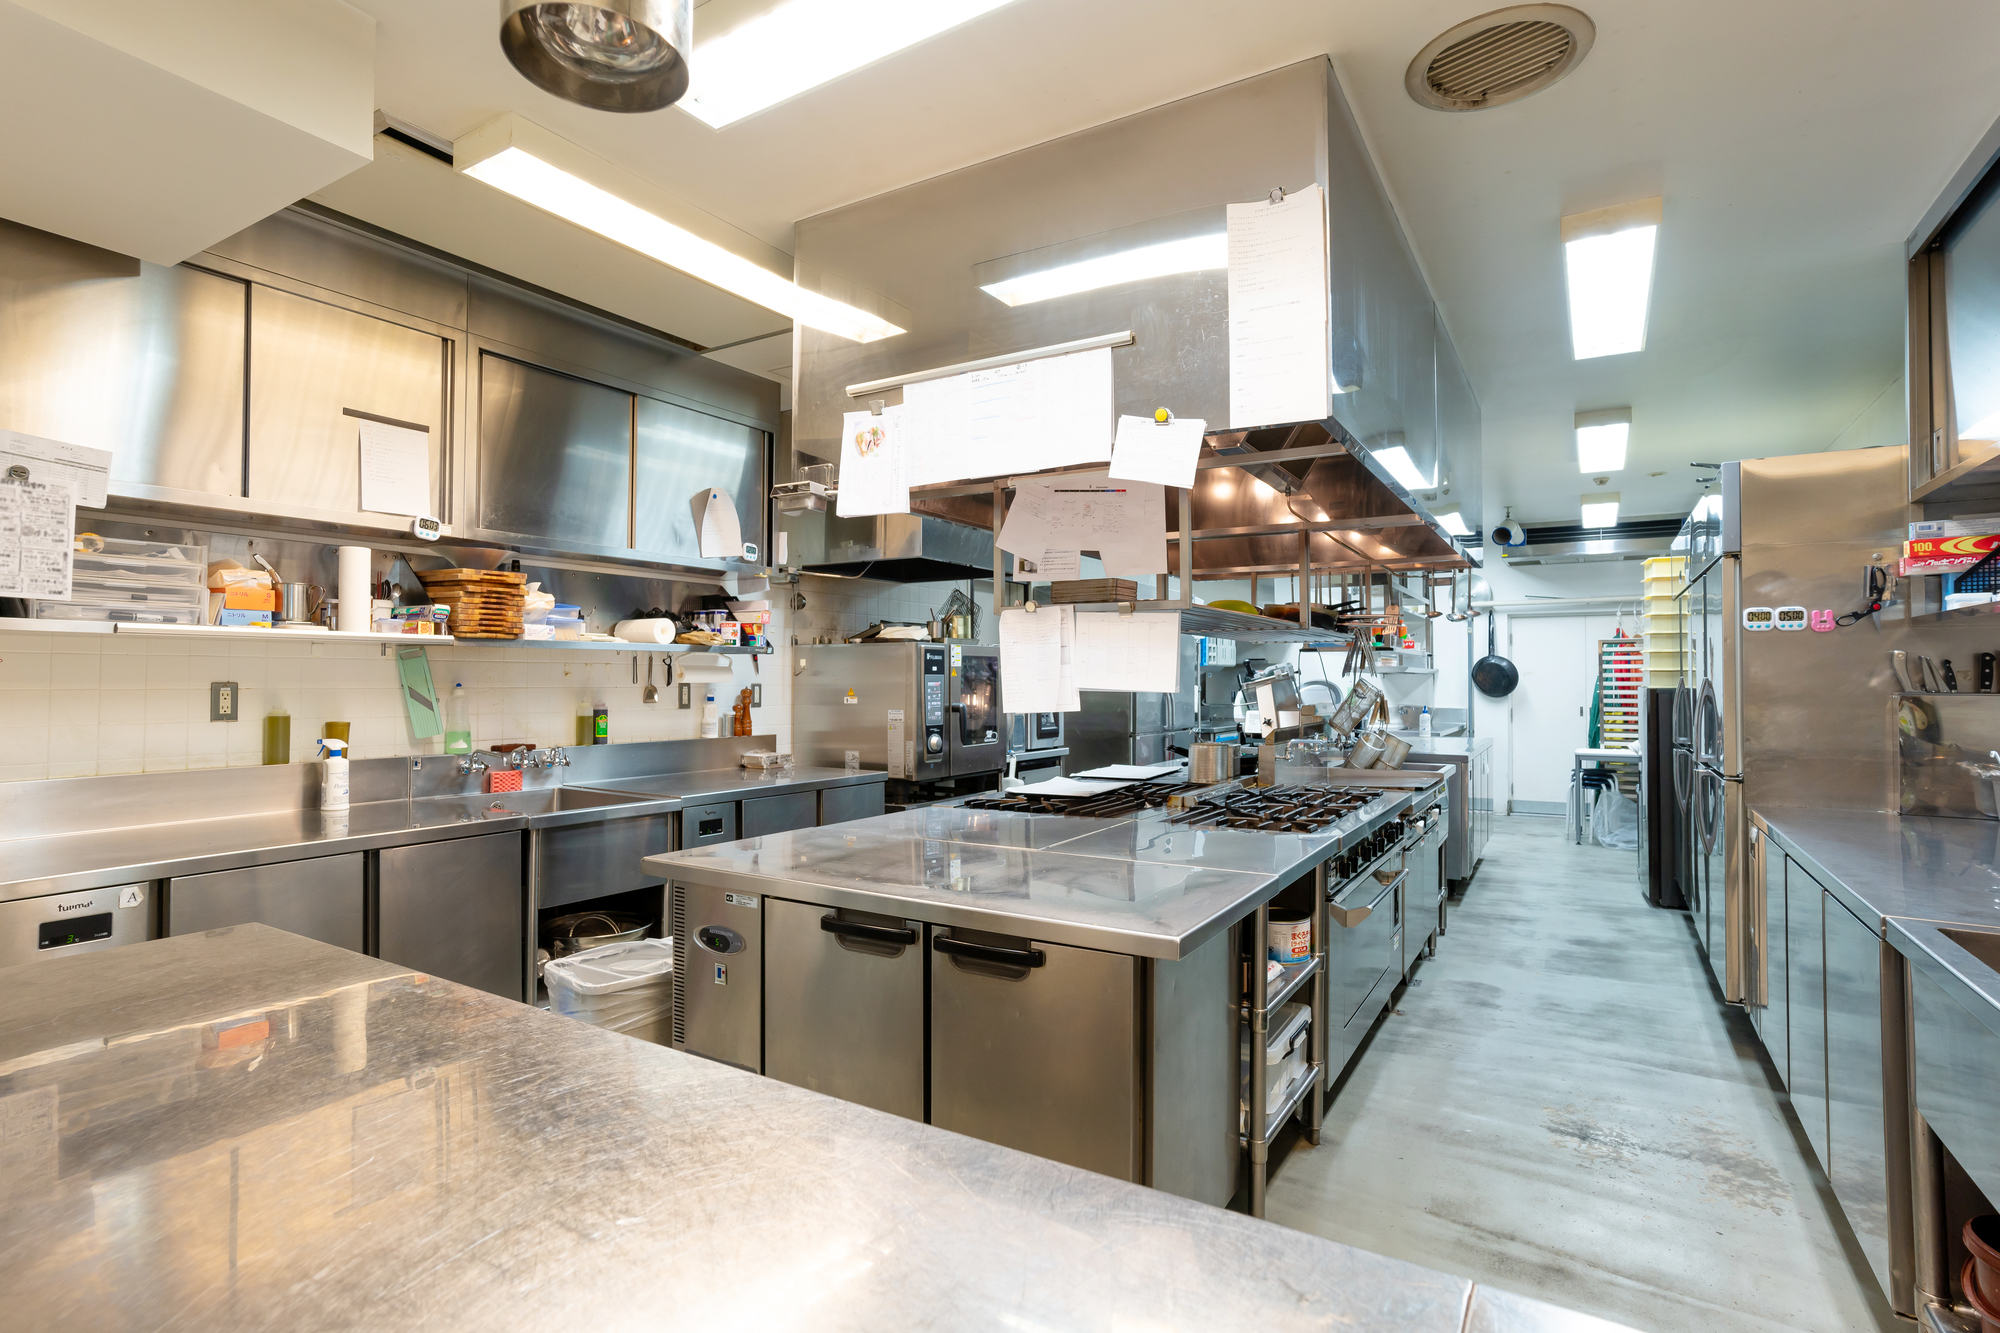 キッチン付きでワークショップ・料理教室におすすめなスペースを探す